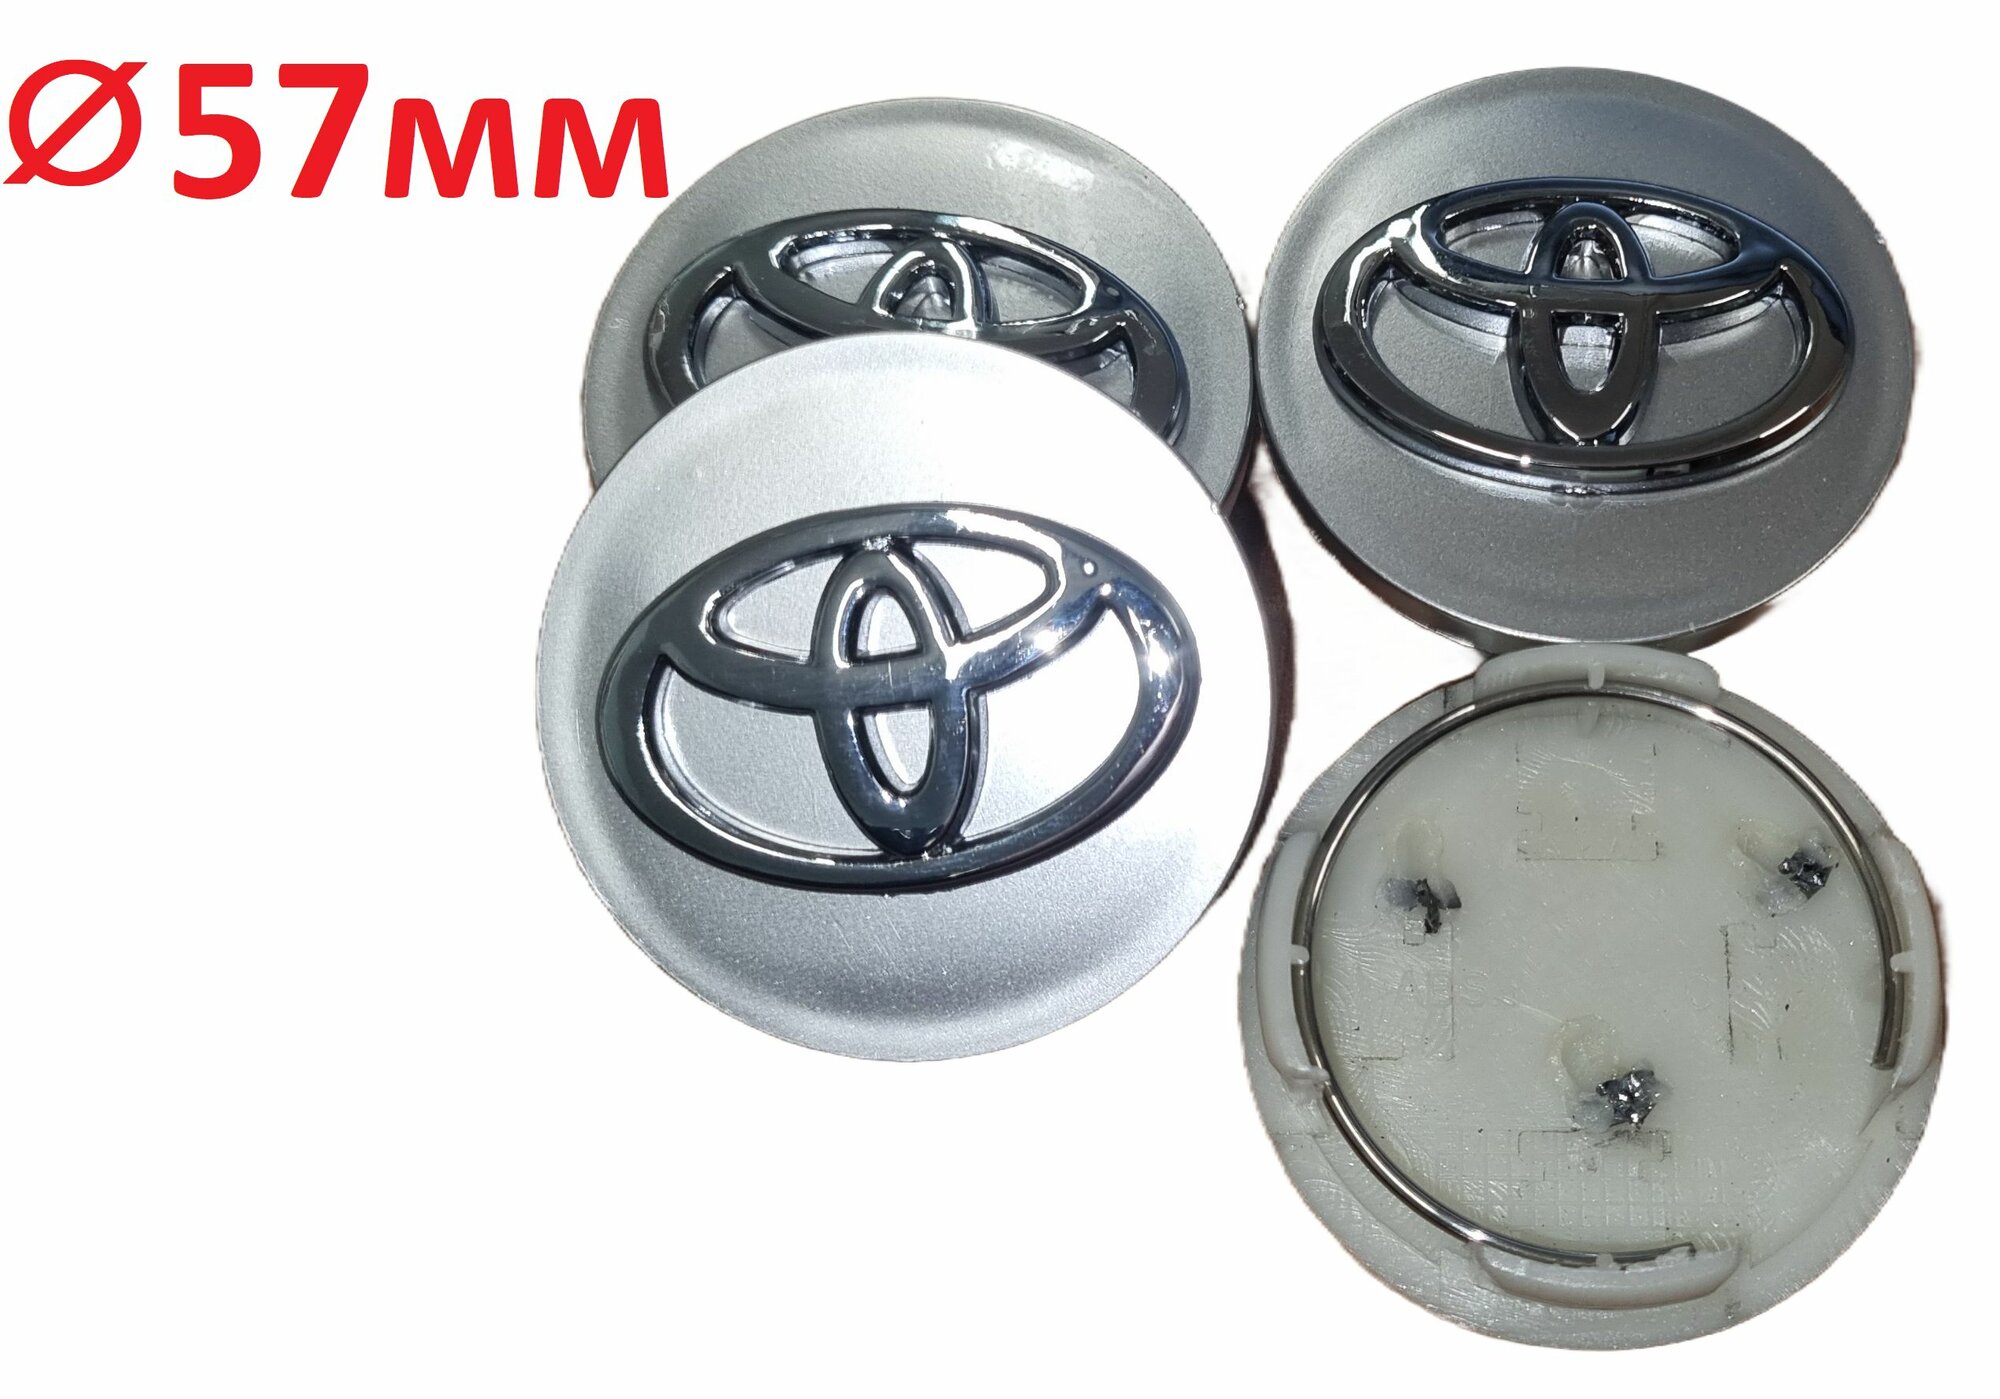 Колпак ступицы колпачки серые комплект 4 штуки заглушки на литые диски Тойота Toyota посадочный Ф57 мм общая высота 19 мм